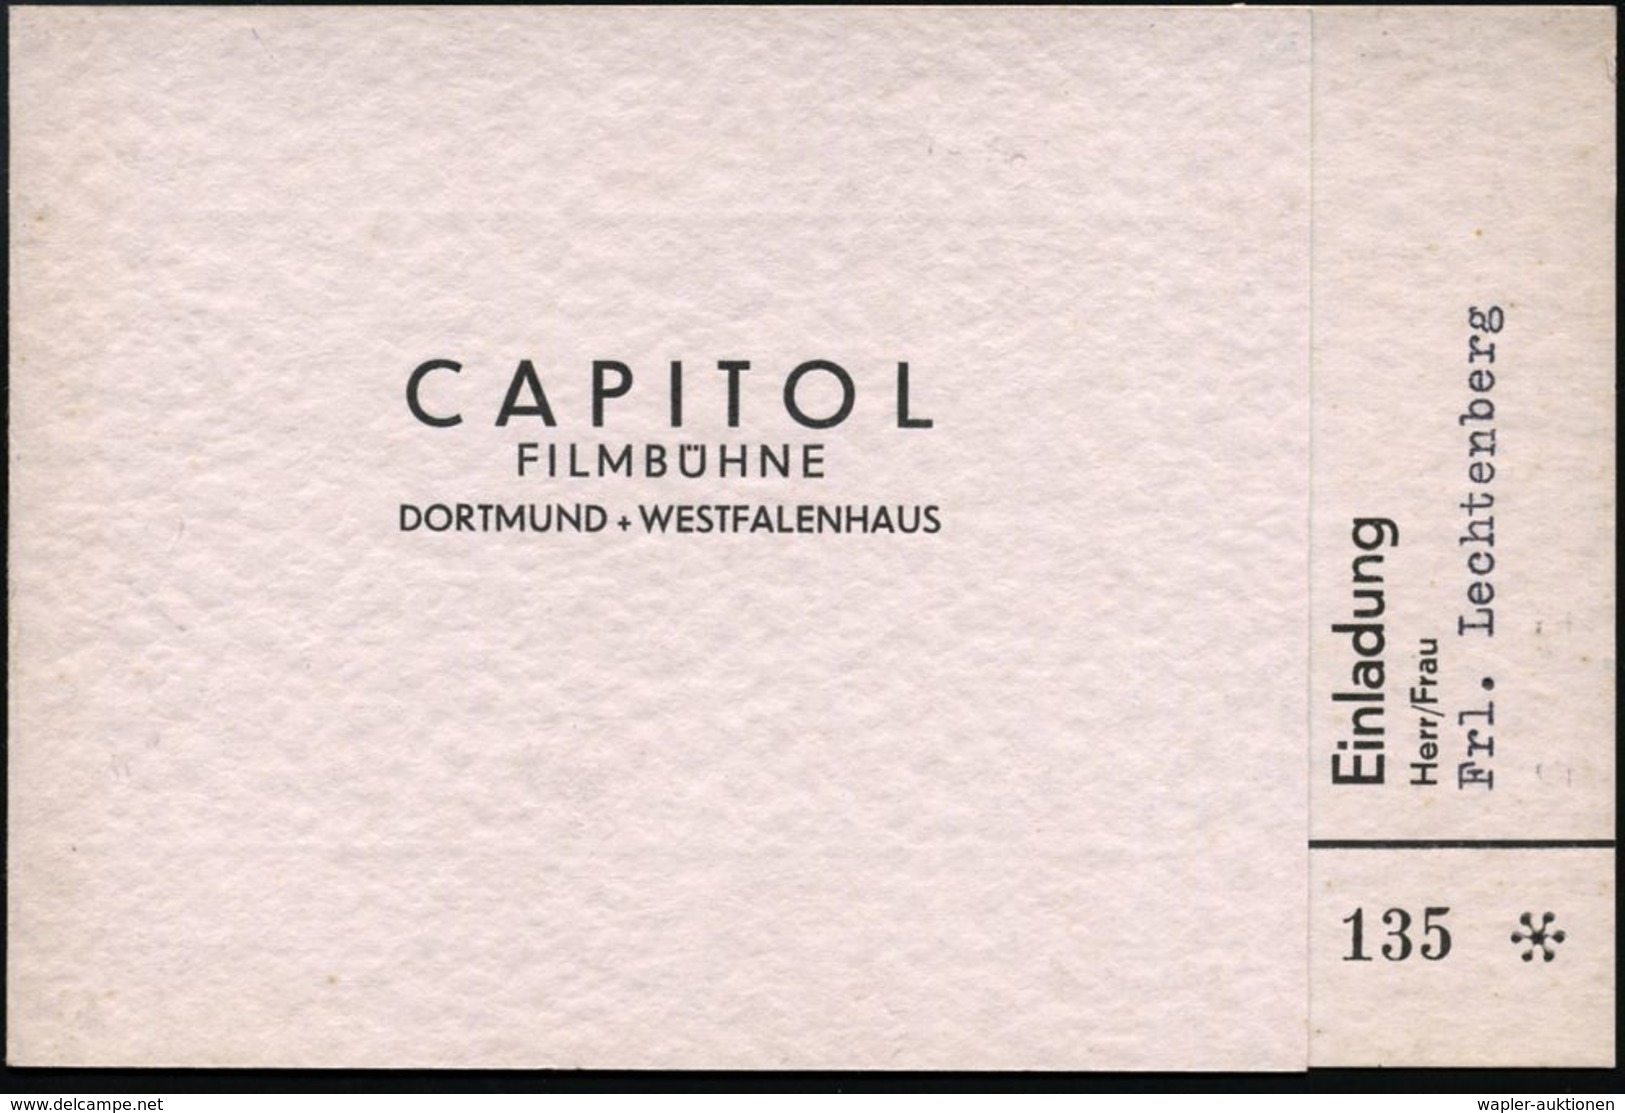 FILM / FILMVERLEIH / FILMTITEL / KINO : Dortmund 1938 (Feb.) Ehren-Eintrittskarte "CAPITOL-FILMBÜHNE" Zur Film-Uraufführ - Kino